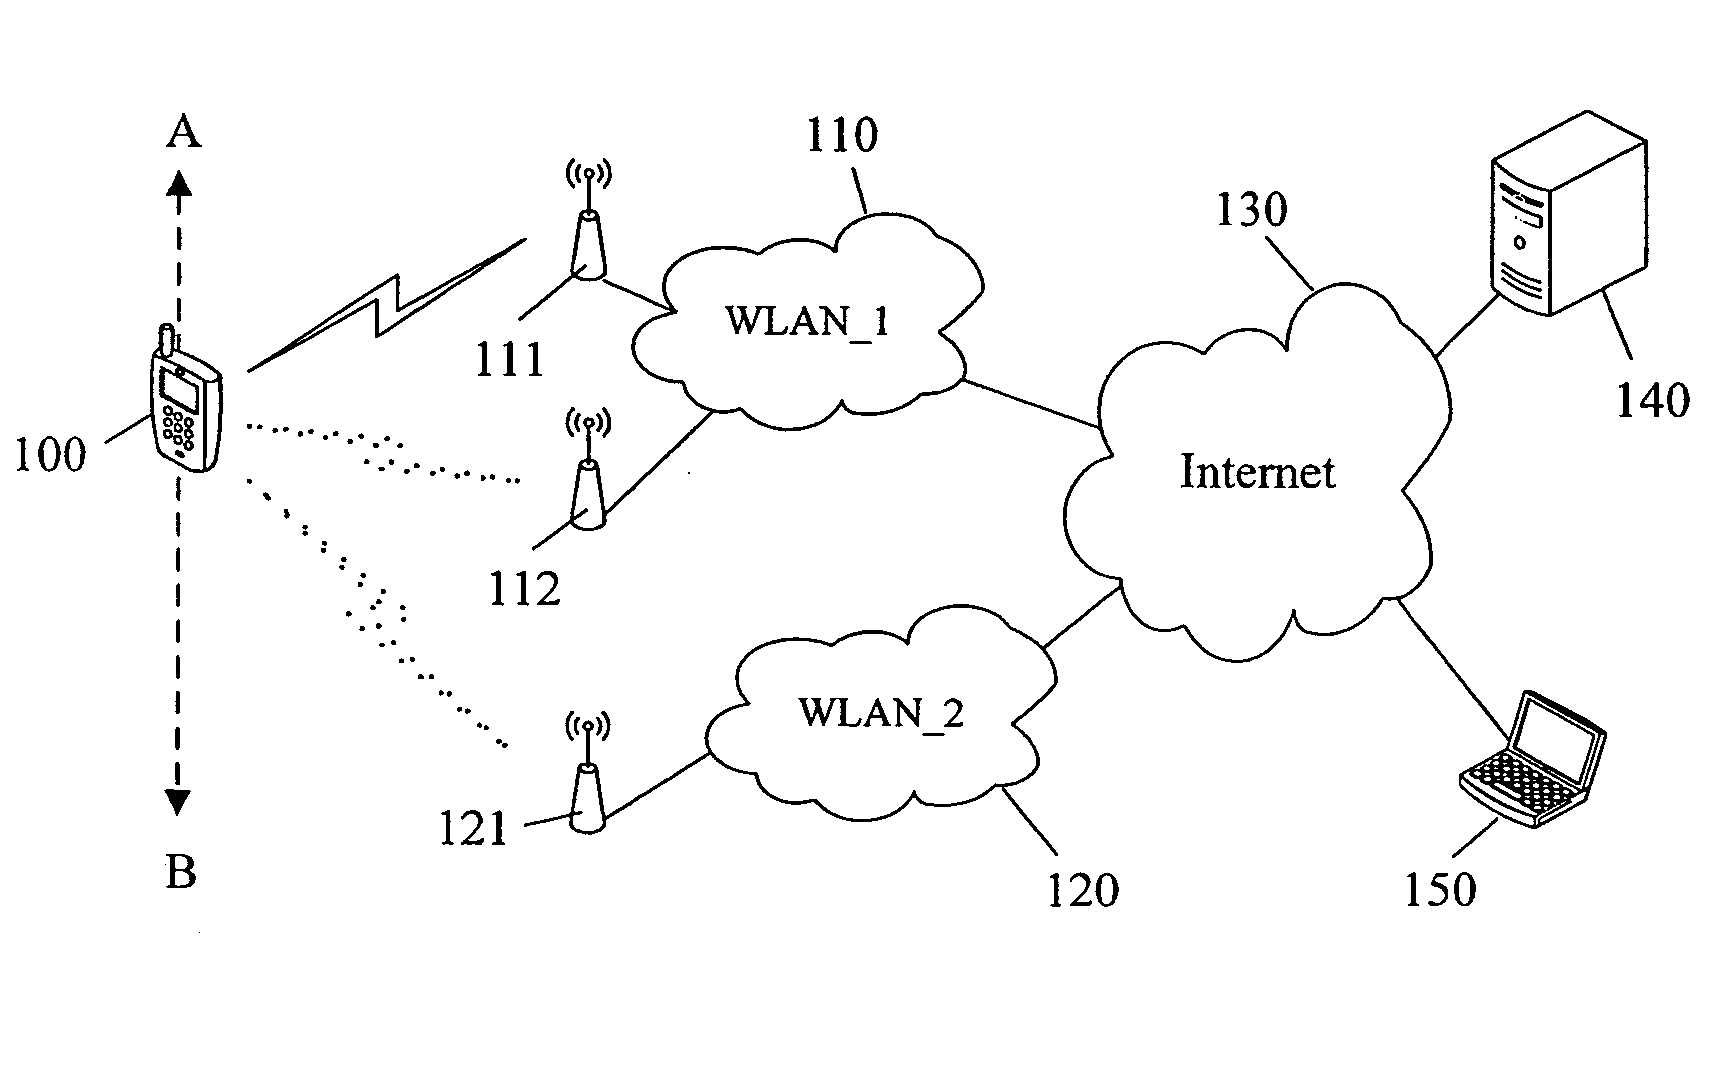 Method of seamlessly roaming between multiple wireless networks using a single wireless network adaptor